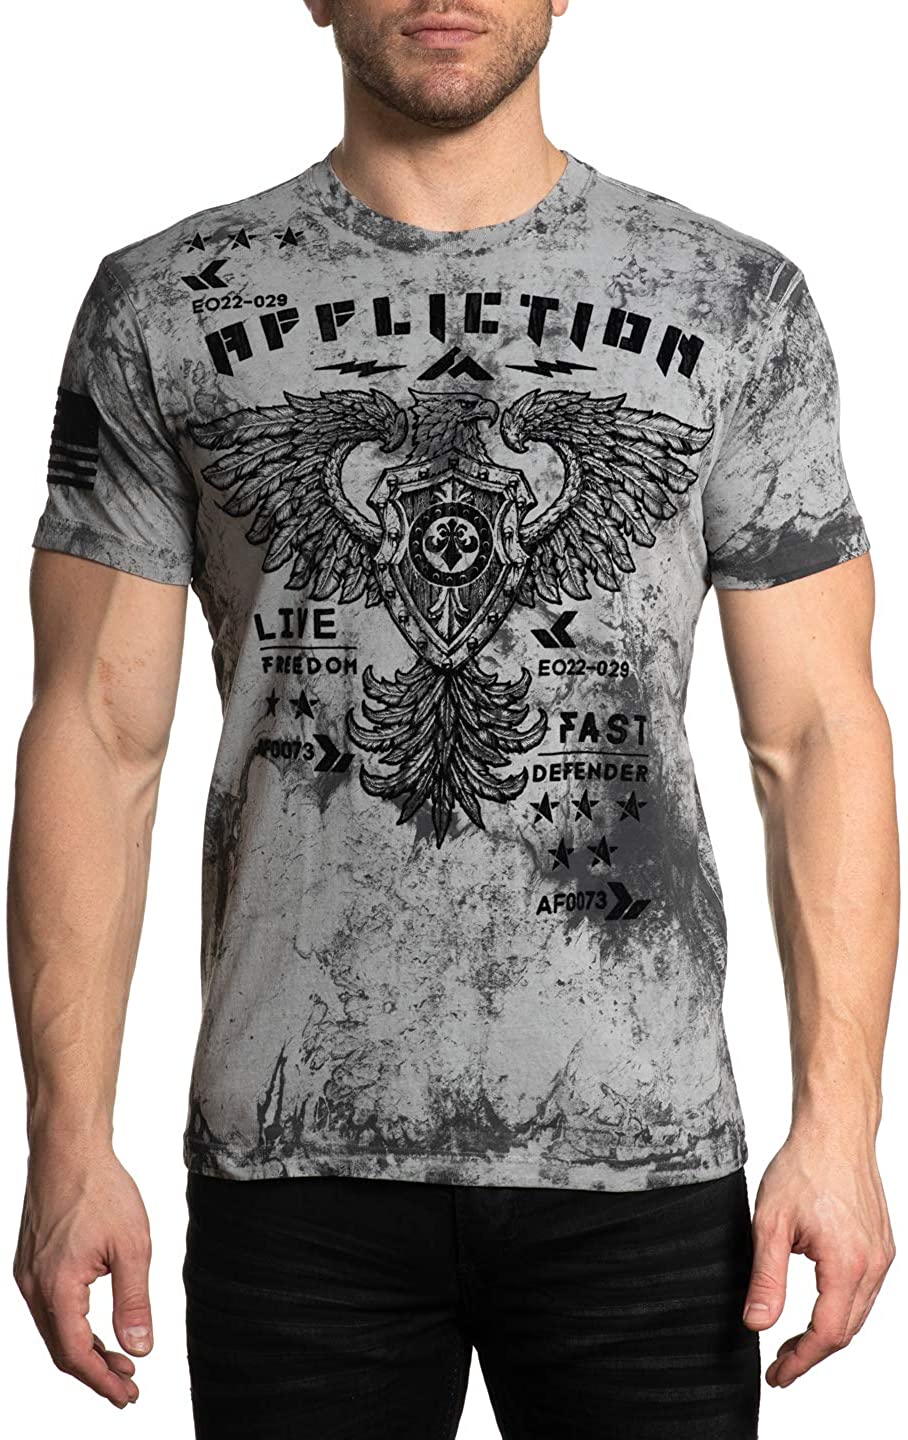 Archaic Affliction Homme S/S T-shirt People Motard Bleu Sarcelle Vengeance M-3XL $40 Neuf avec étiquettes 